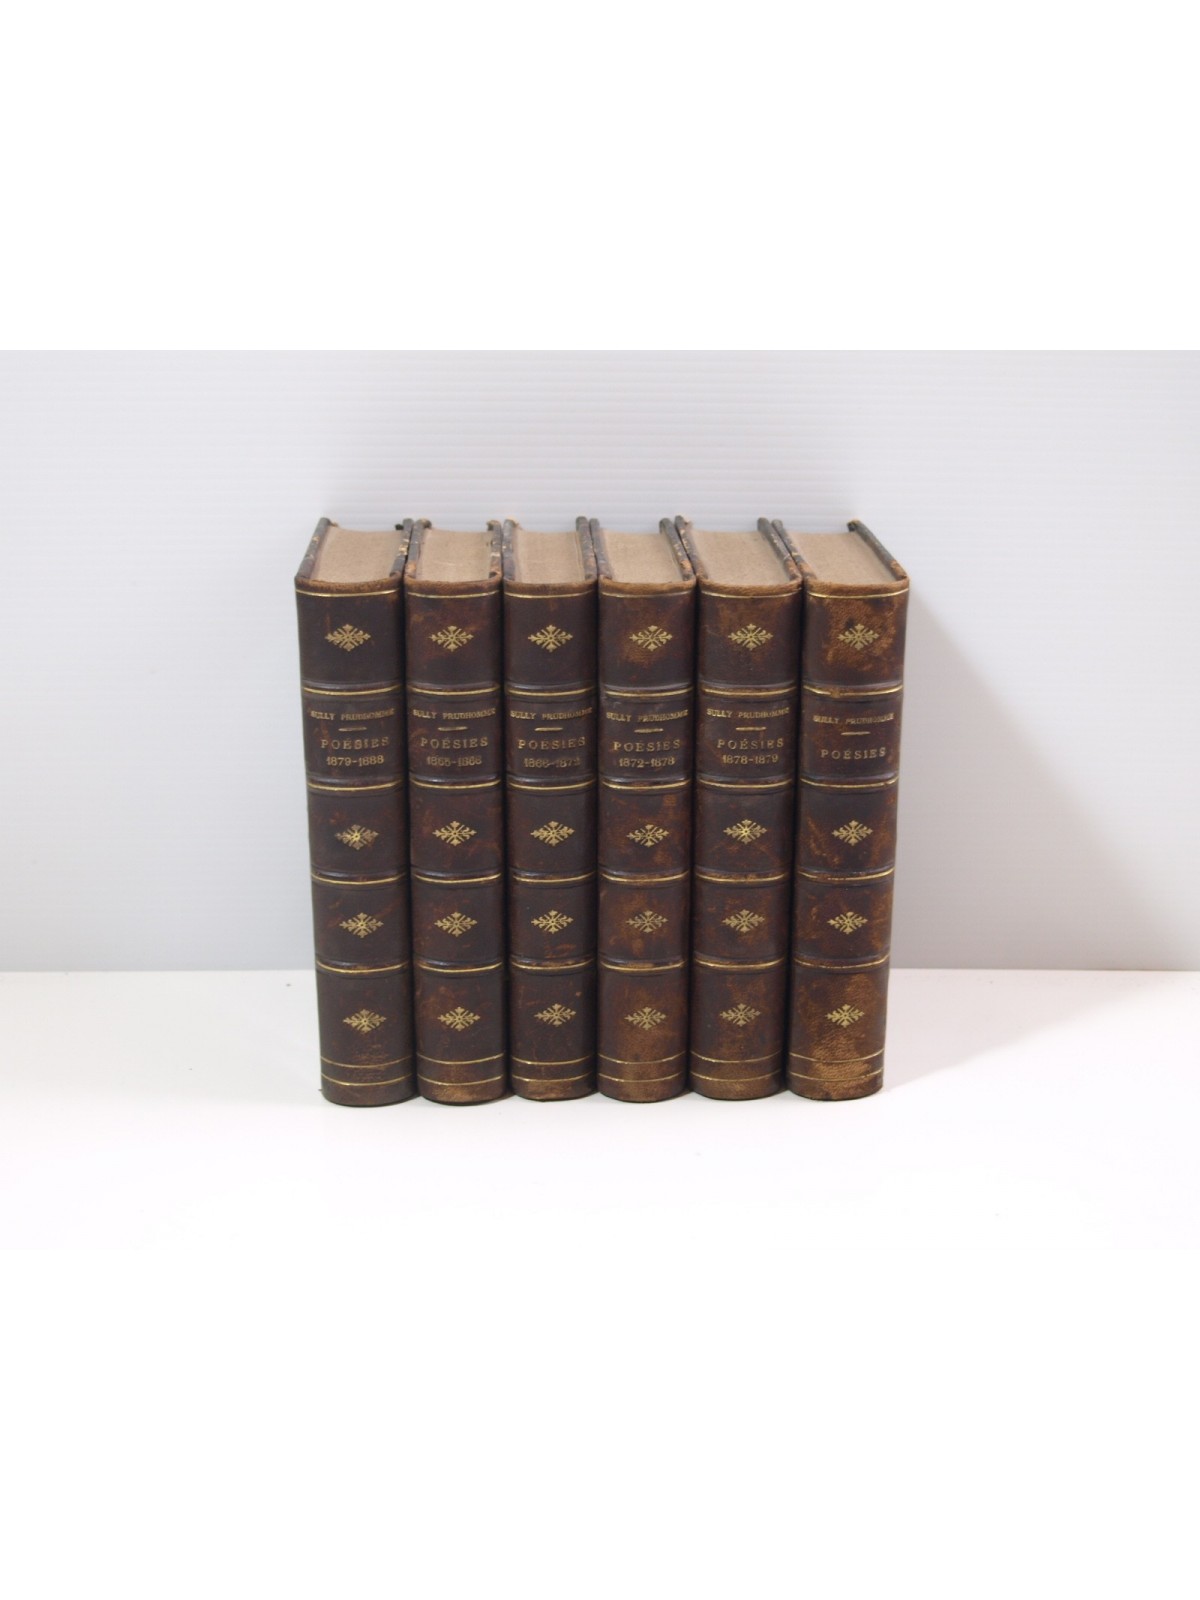 Sully Prudhomme : Poésies. 6 volumes